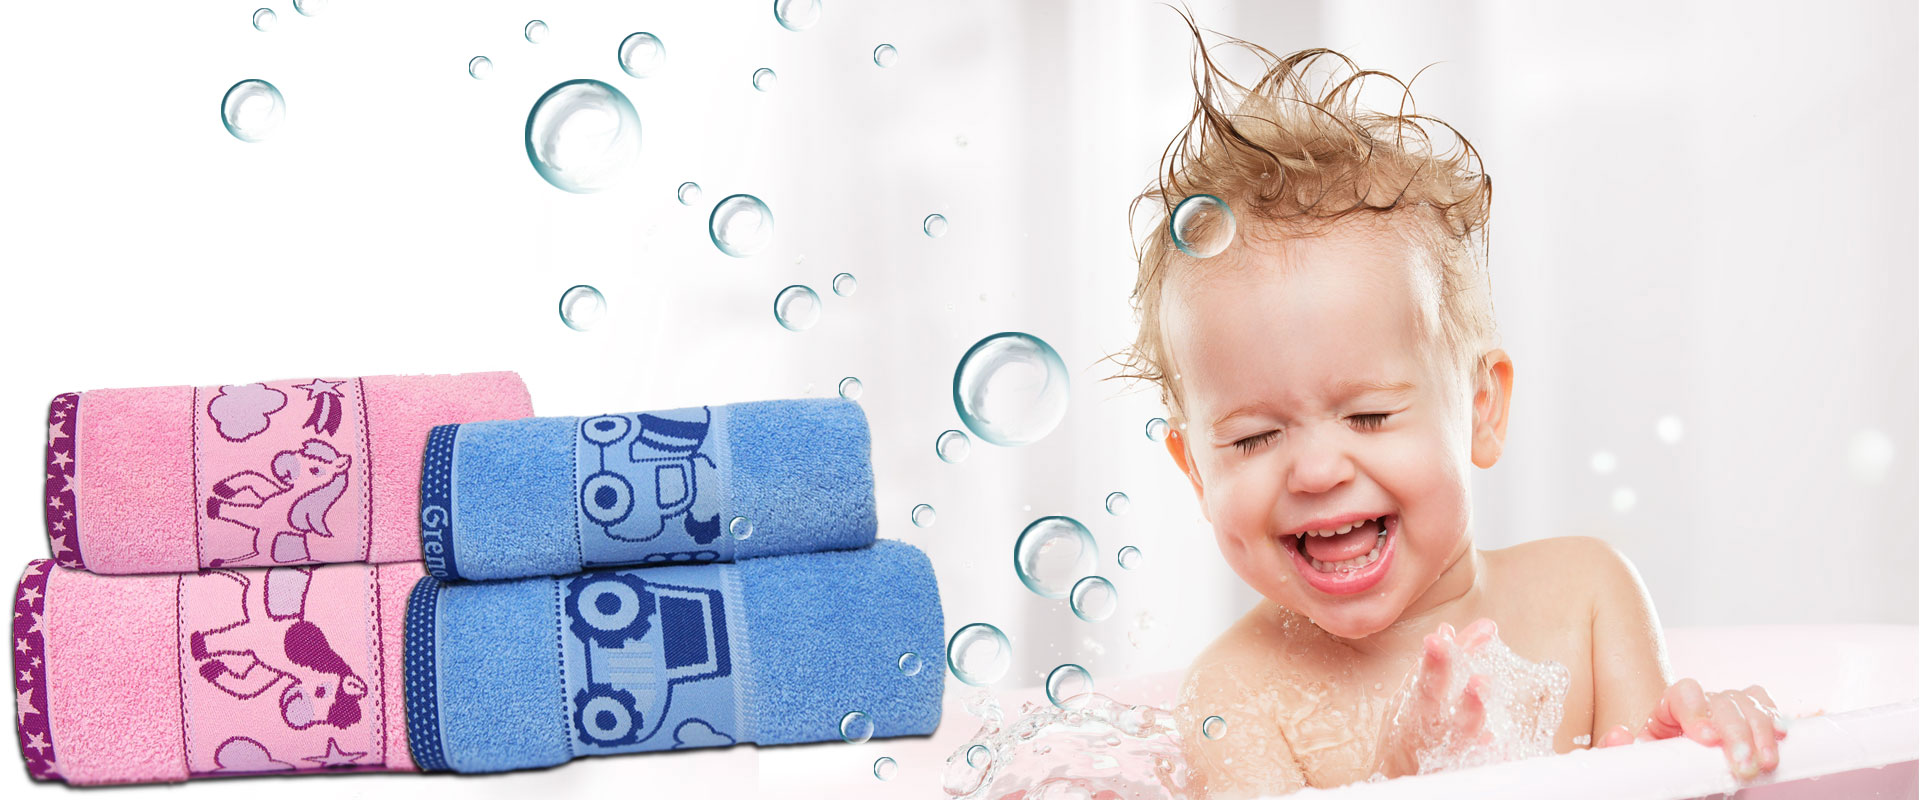 Ręczniki łazienkowe dla dzieci - slajd anonsujący